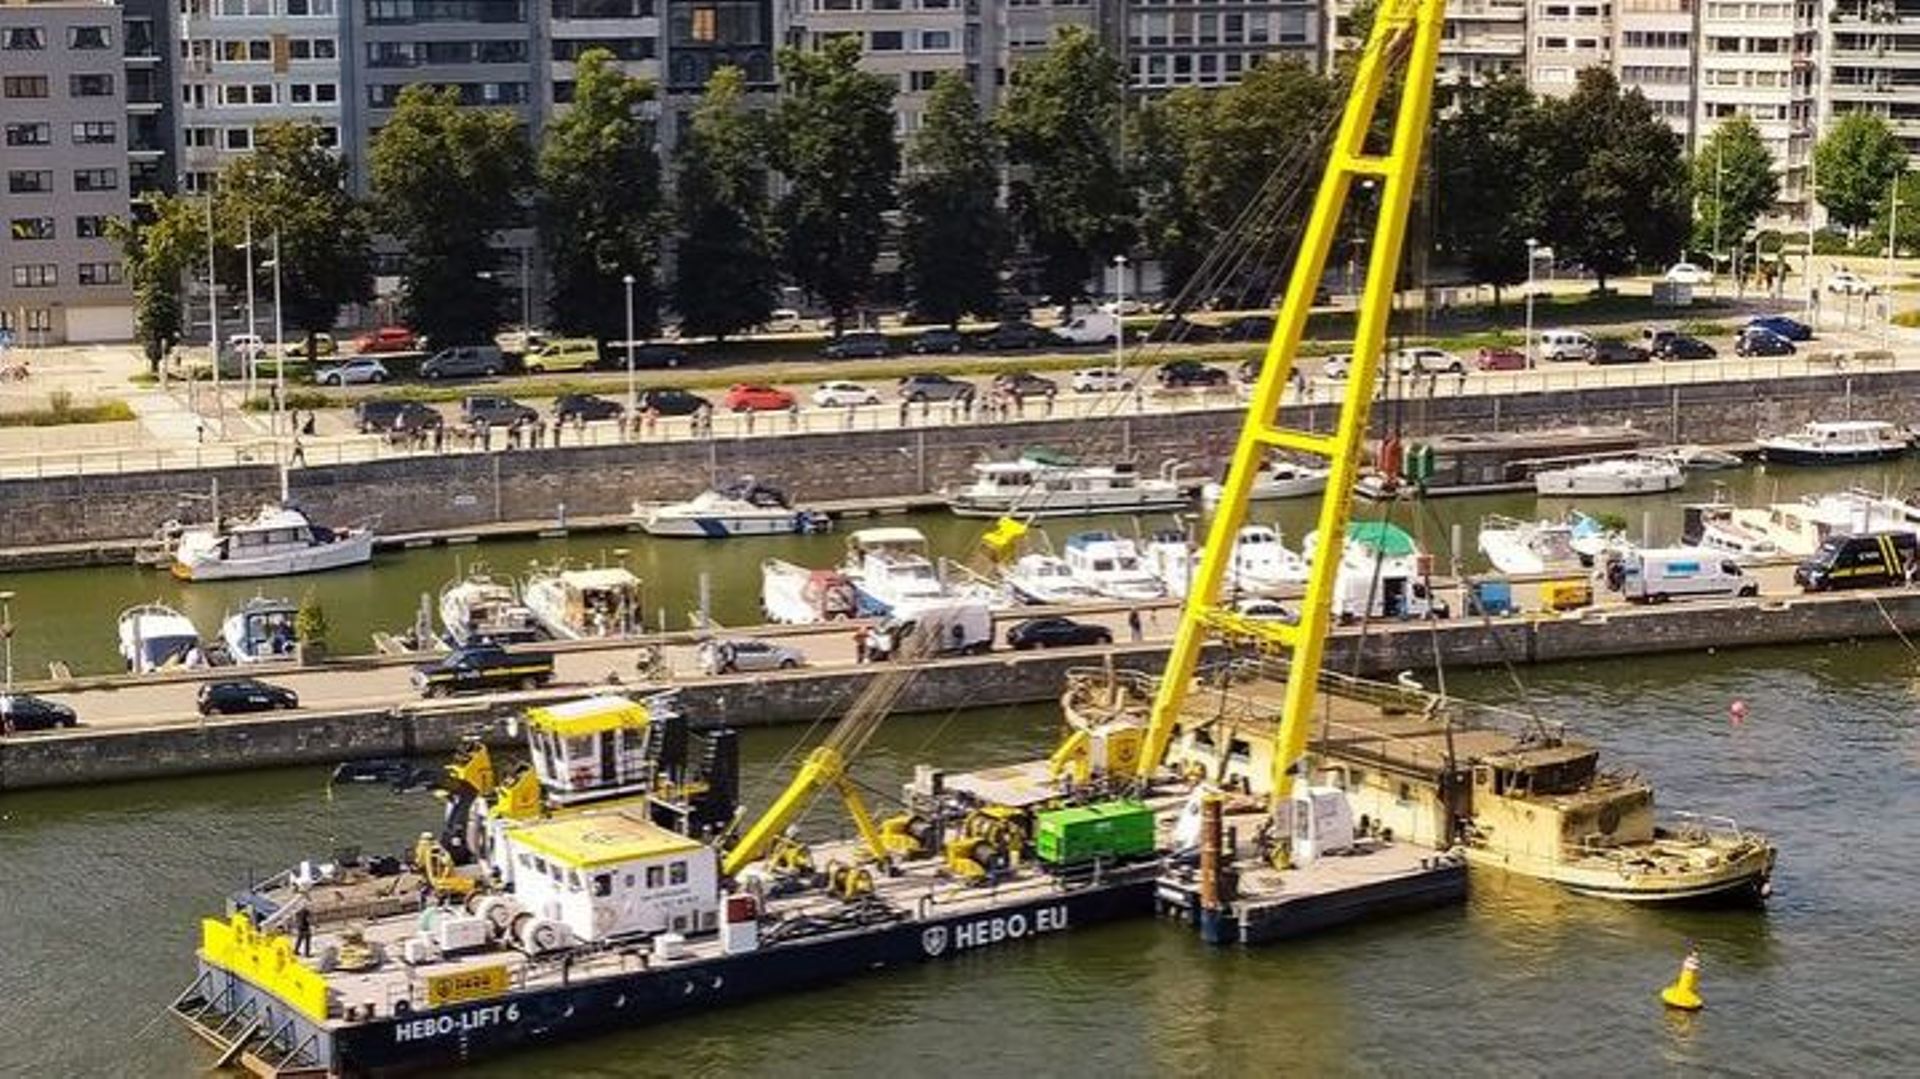 Avec vingt-quatre heures d’avance, la société hollandaise Hebo a renfloué un premier bateau